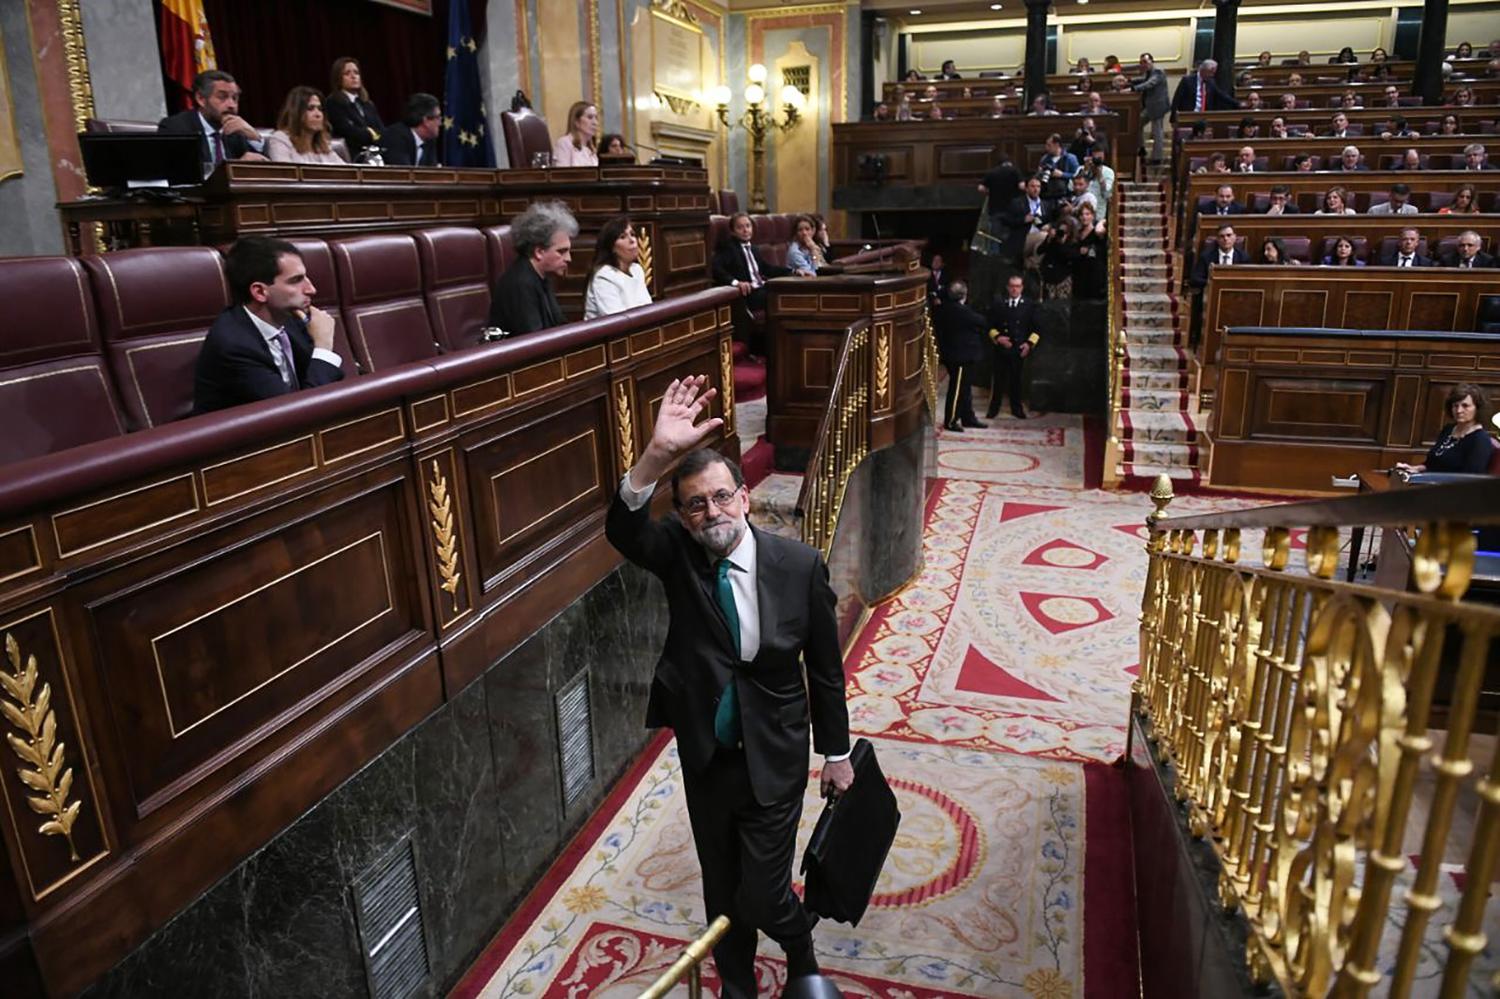 https://www.elsaltodiario.com/uploads/fotos/r1500/9ab857af/Mariano_Rajoy_Adios_Dani_Gago.jpg?v=63701395150